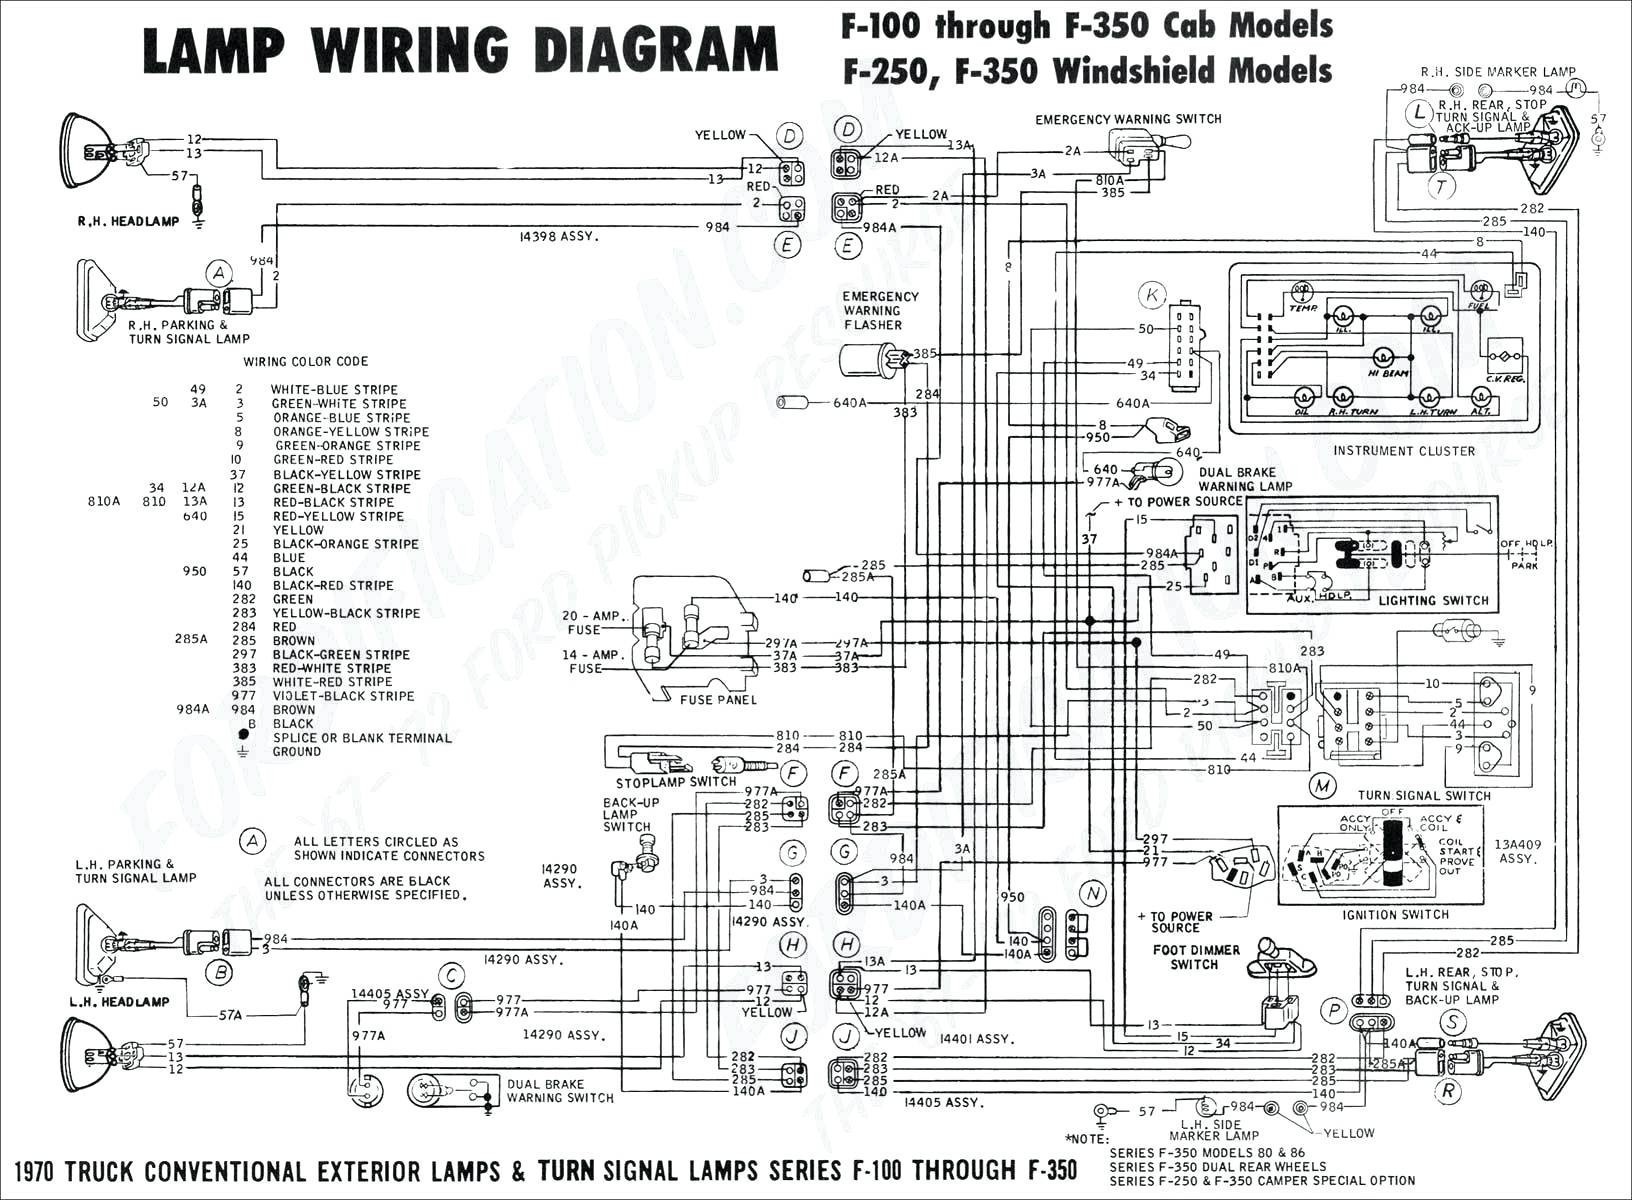 Clark Gcx30e Wiring Diagram Schematics Wiring Diagram Light Switch Home Wiring Diagram Dorman Wiring Diagram